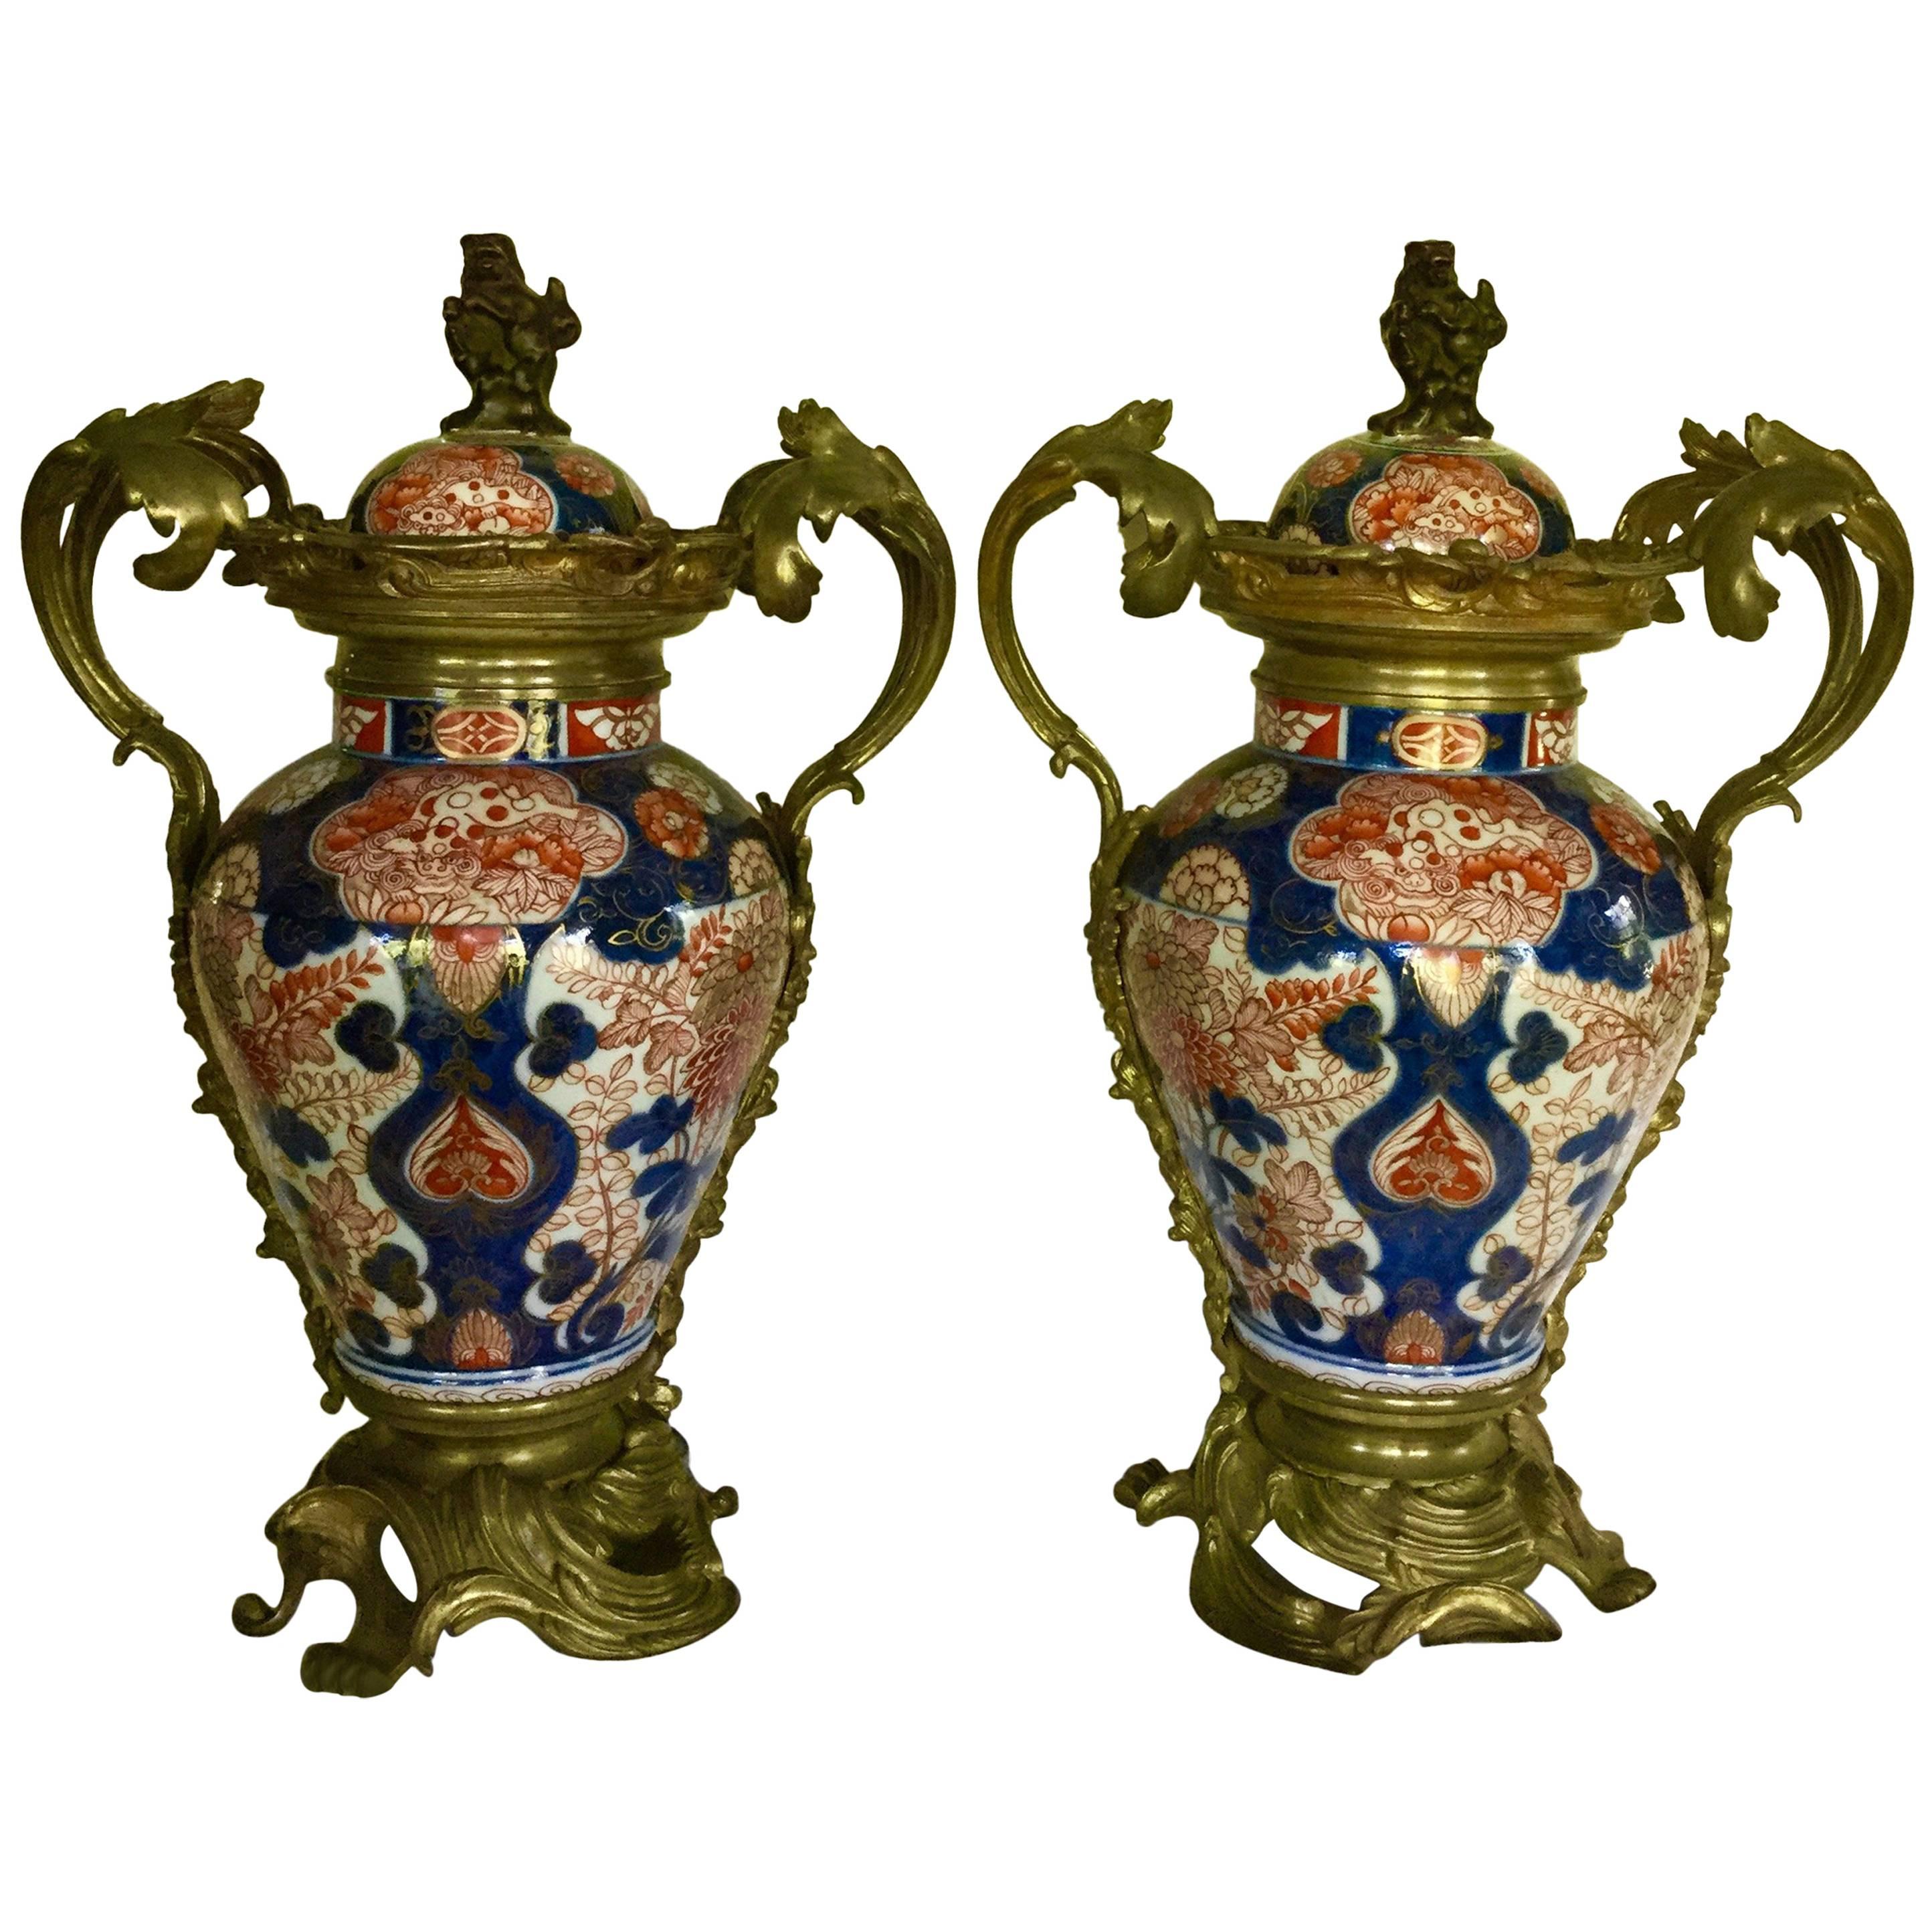 Äußerst dekorative antike Imari-Balusterkrüge mit Deckeln und Bronze-Doré-Beschlägen.
Porzellan Japanisch
Montiert Französisch
19. Jahrhundert